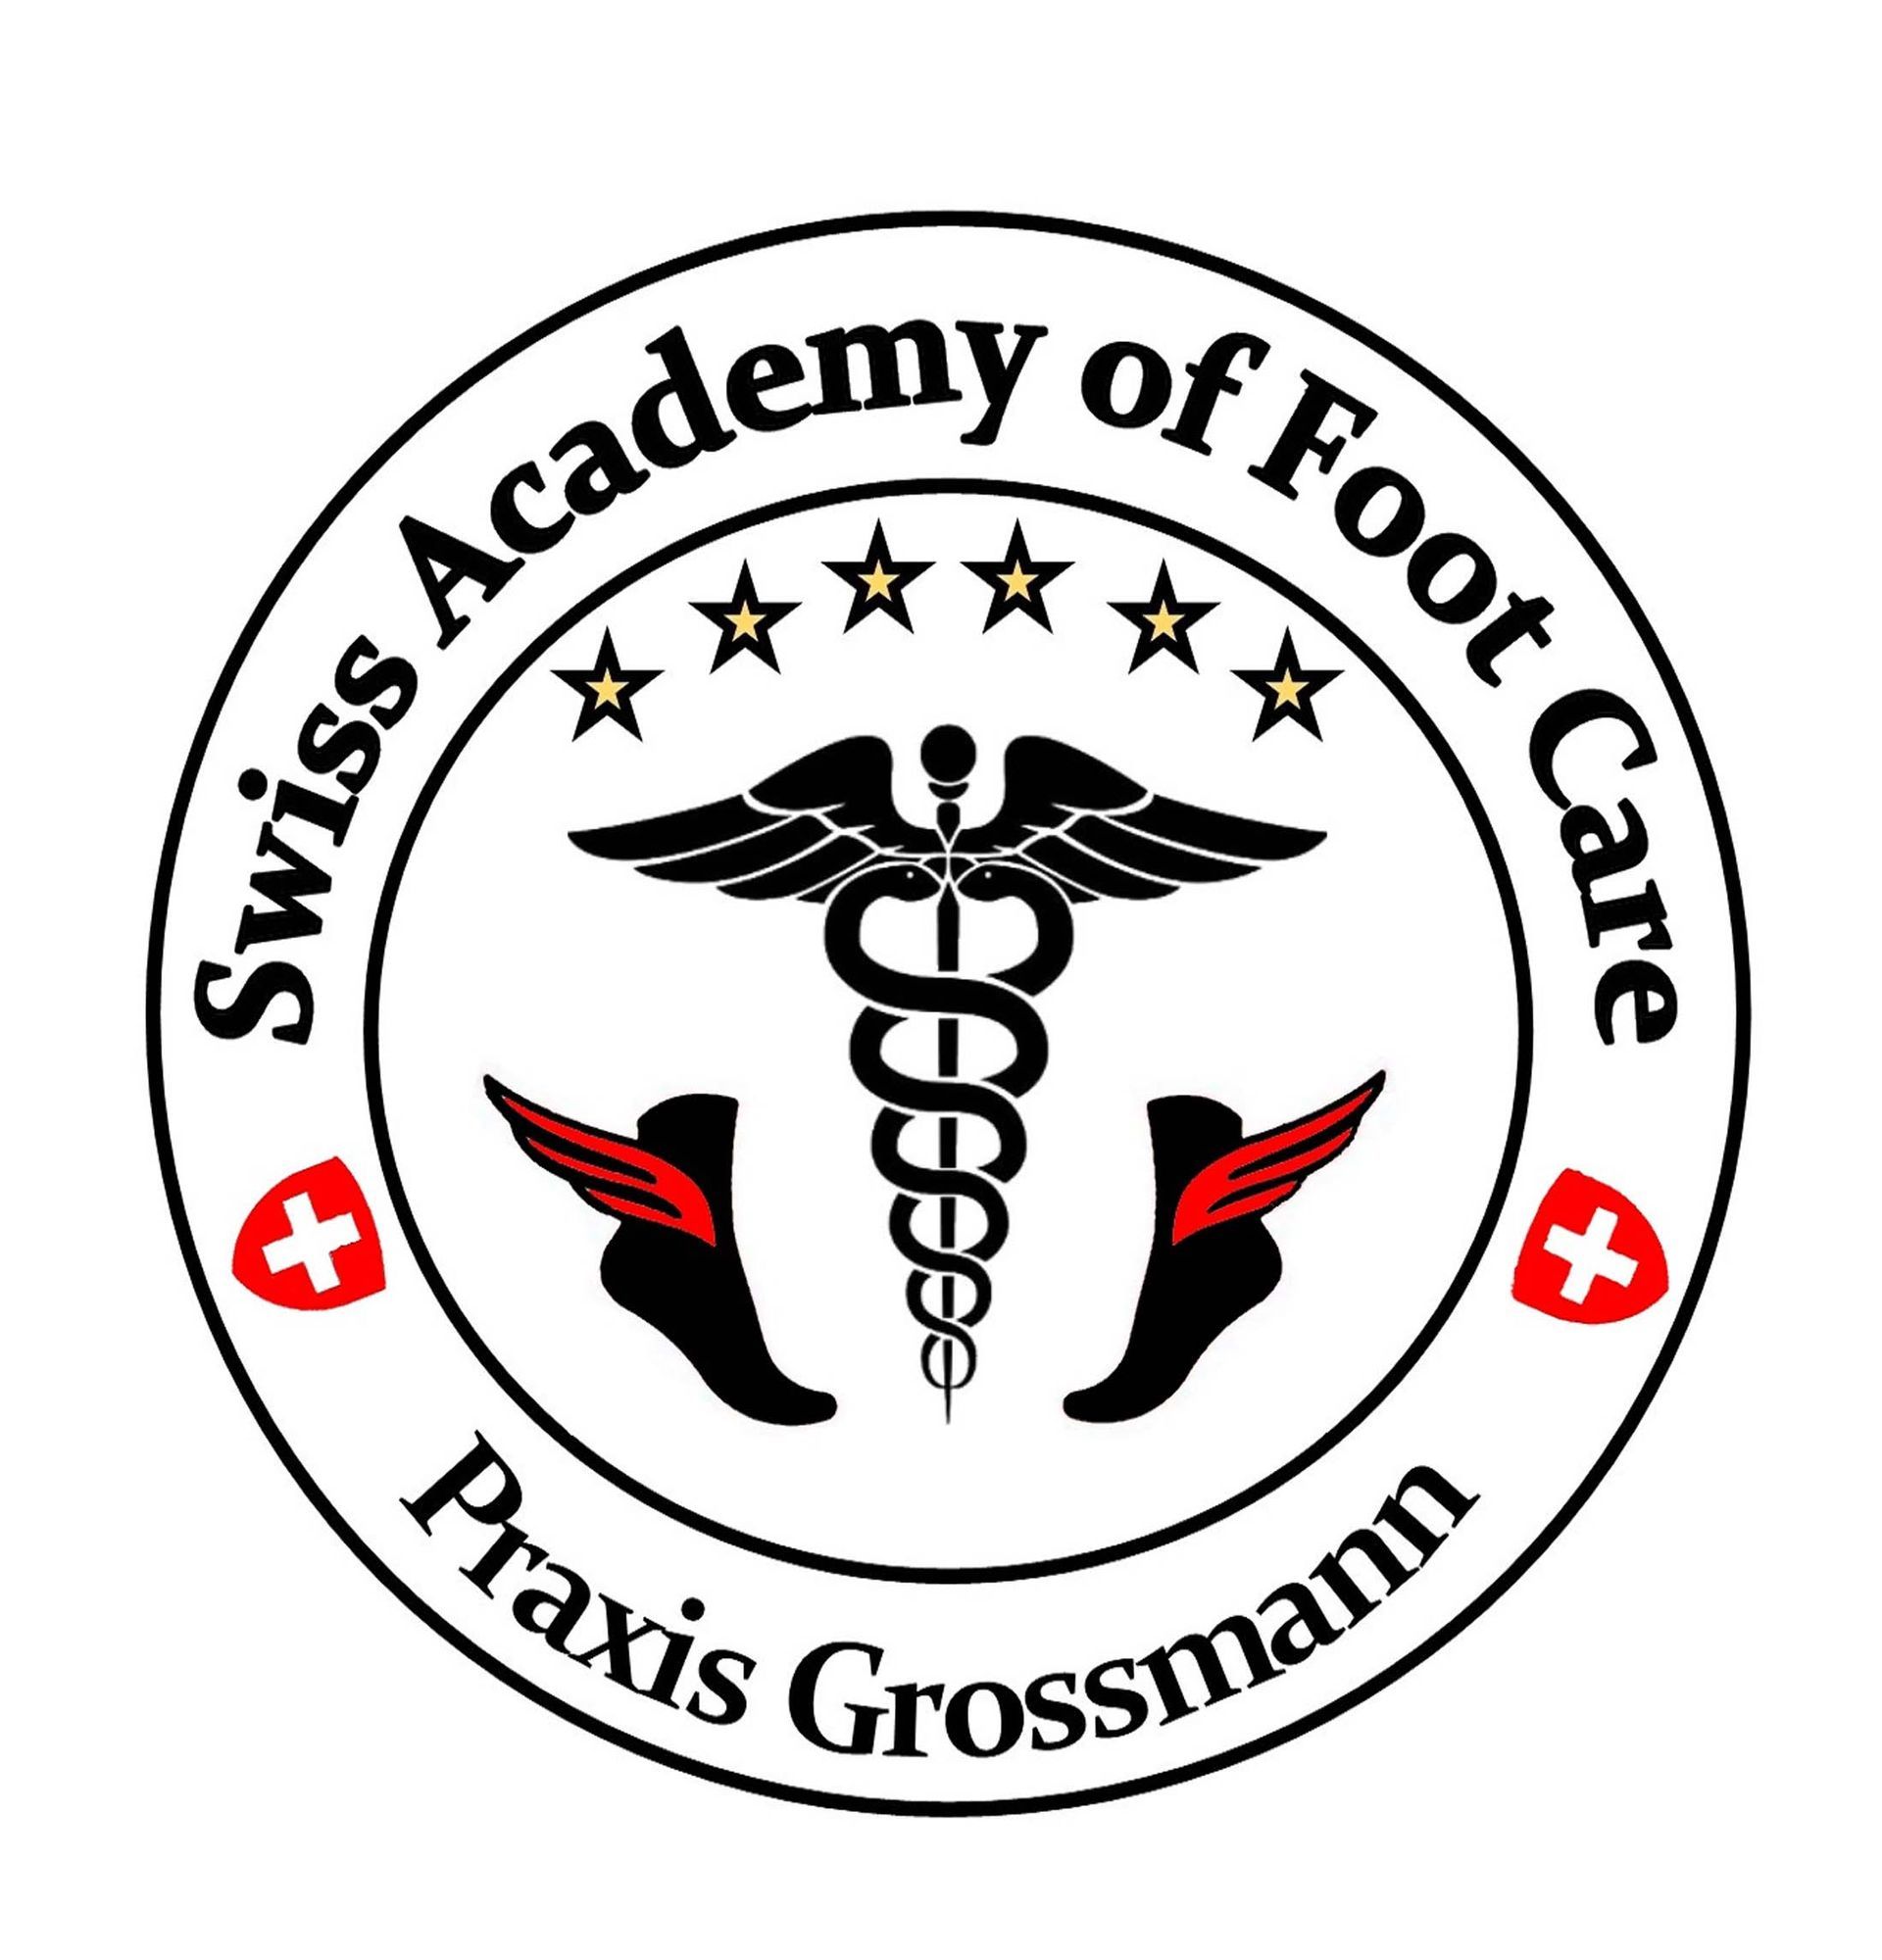 Pedicureschule Grossmann | Podologie-Praxis | Oerlikon